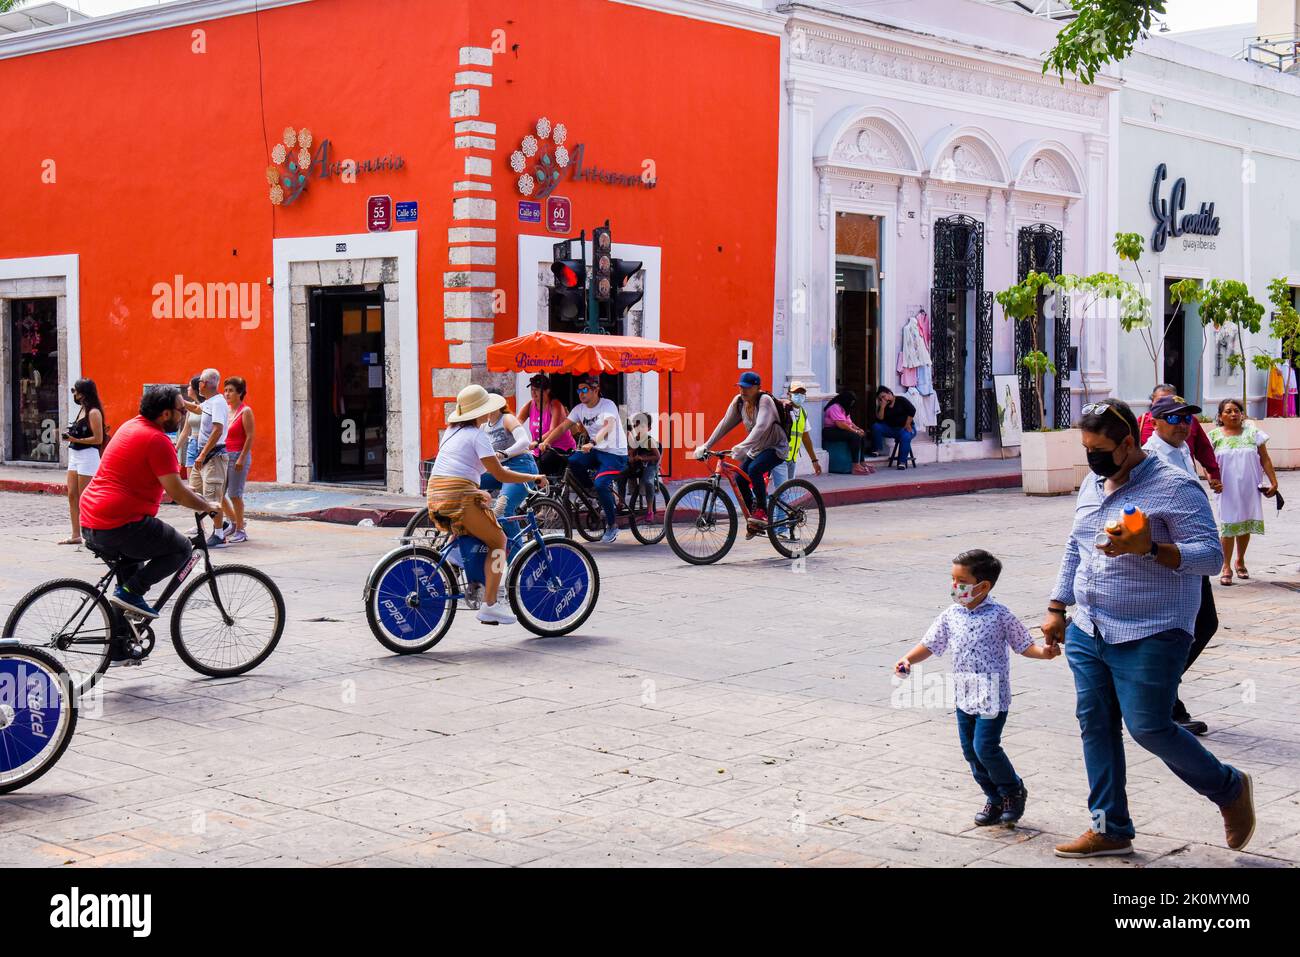 Biciruta est un événement de vélo traditionnel de la communauté du dimanche où la ville ferme quelques rues dans le centre historique pour permettre aux gens de faire du vélo et de profiter des activités de plein air, Merida, Yucatan, Mexique Banque D'Images